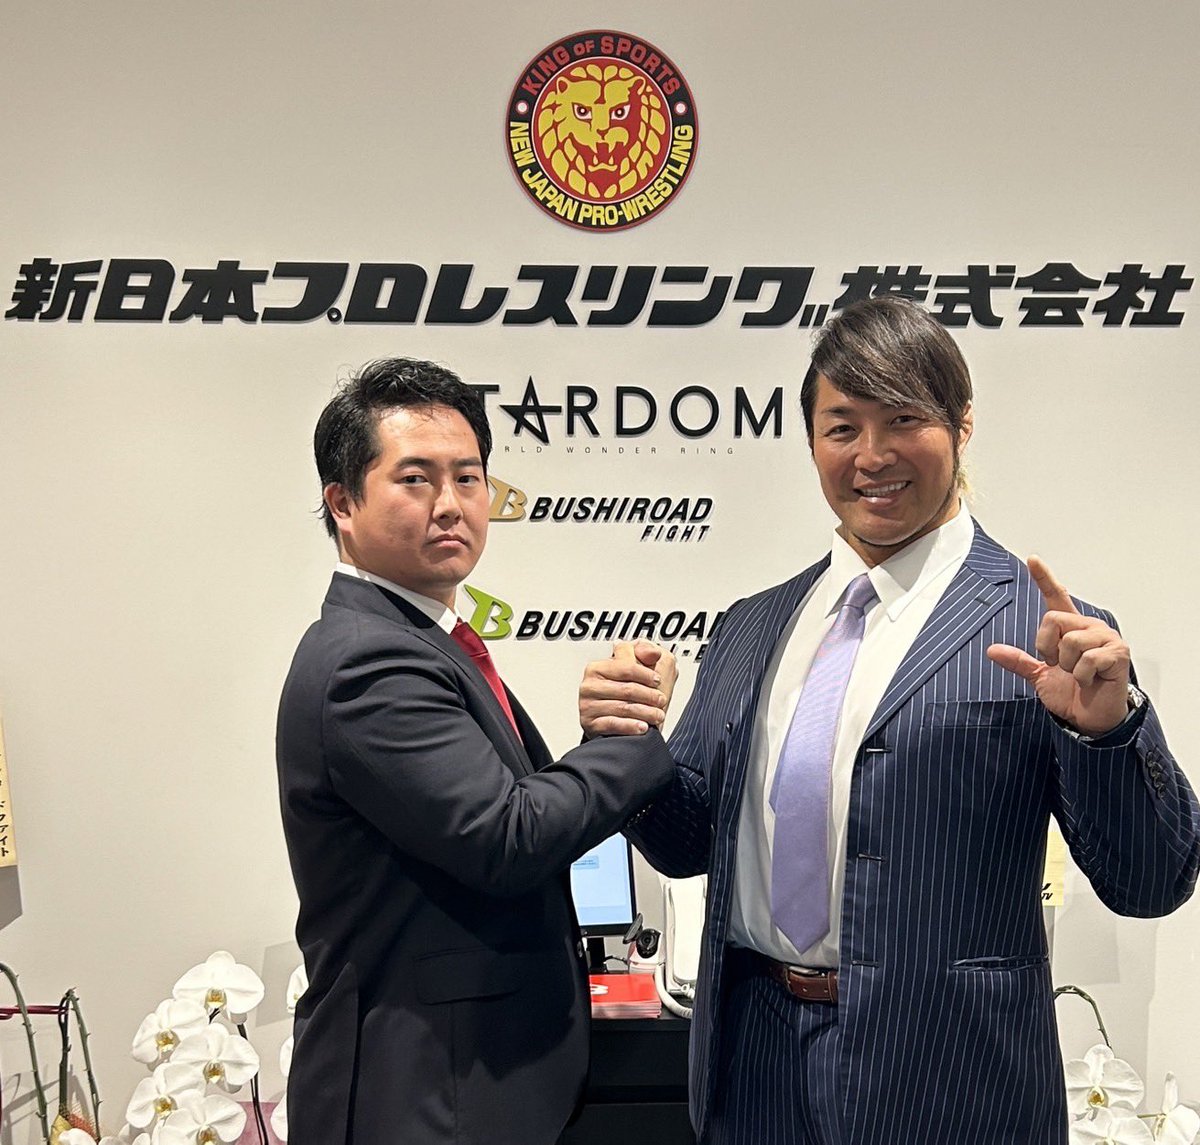 当社代表取締役社長・岡田太郎が、新日本プロレスリング株式会社の取締役に就任いたしました。

ブシロードグループとしてのグループシナジーを図り、益々の発展を目指して参ります。

#新日本プロレス 
#STARDOM